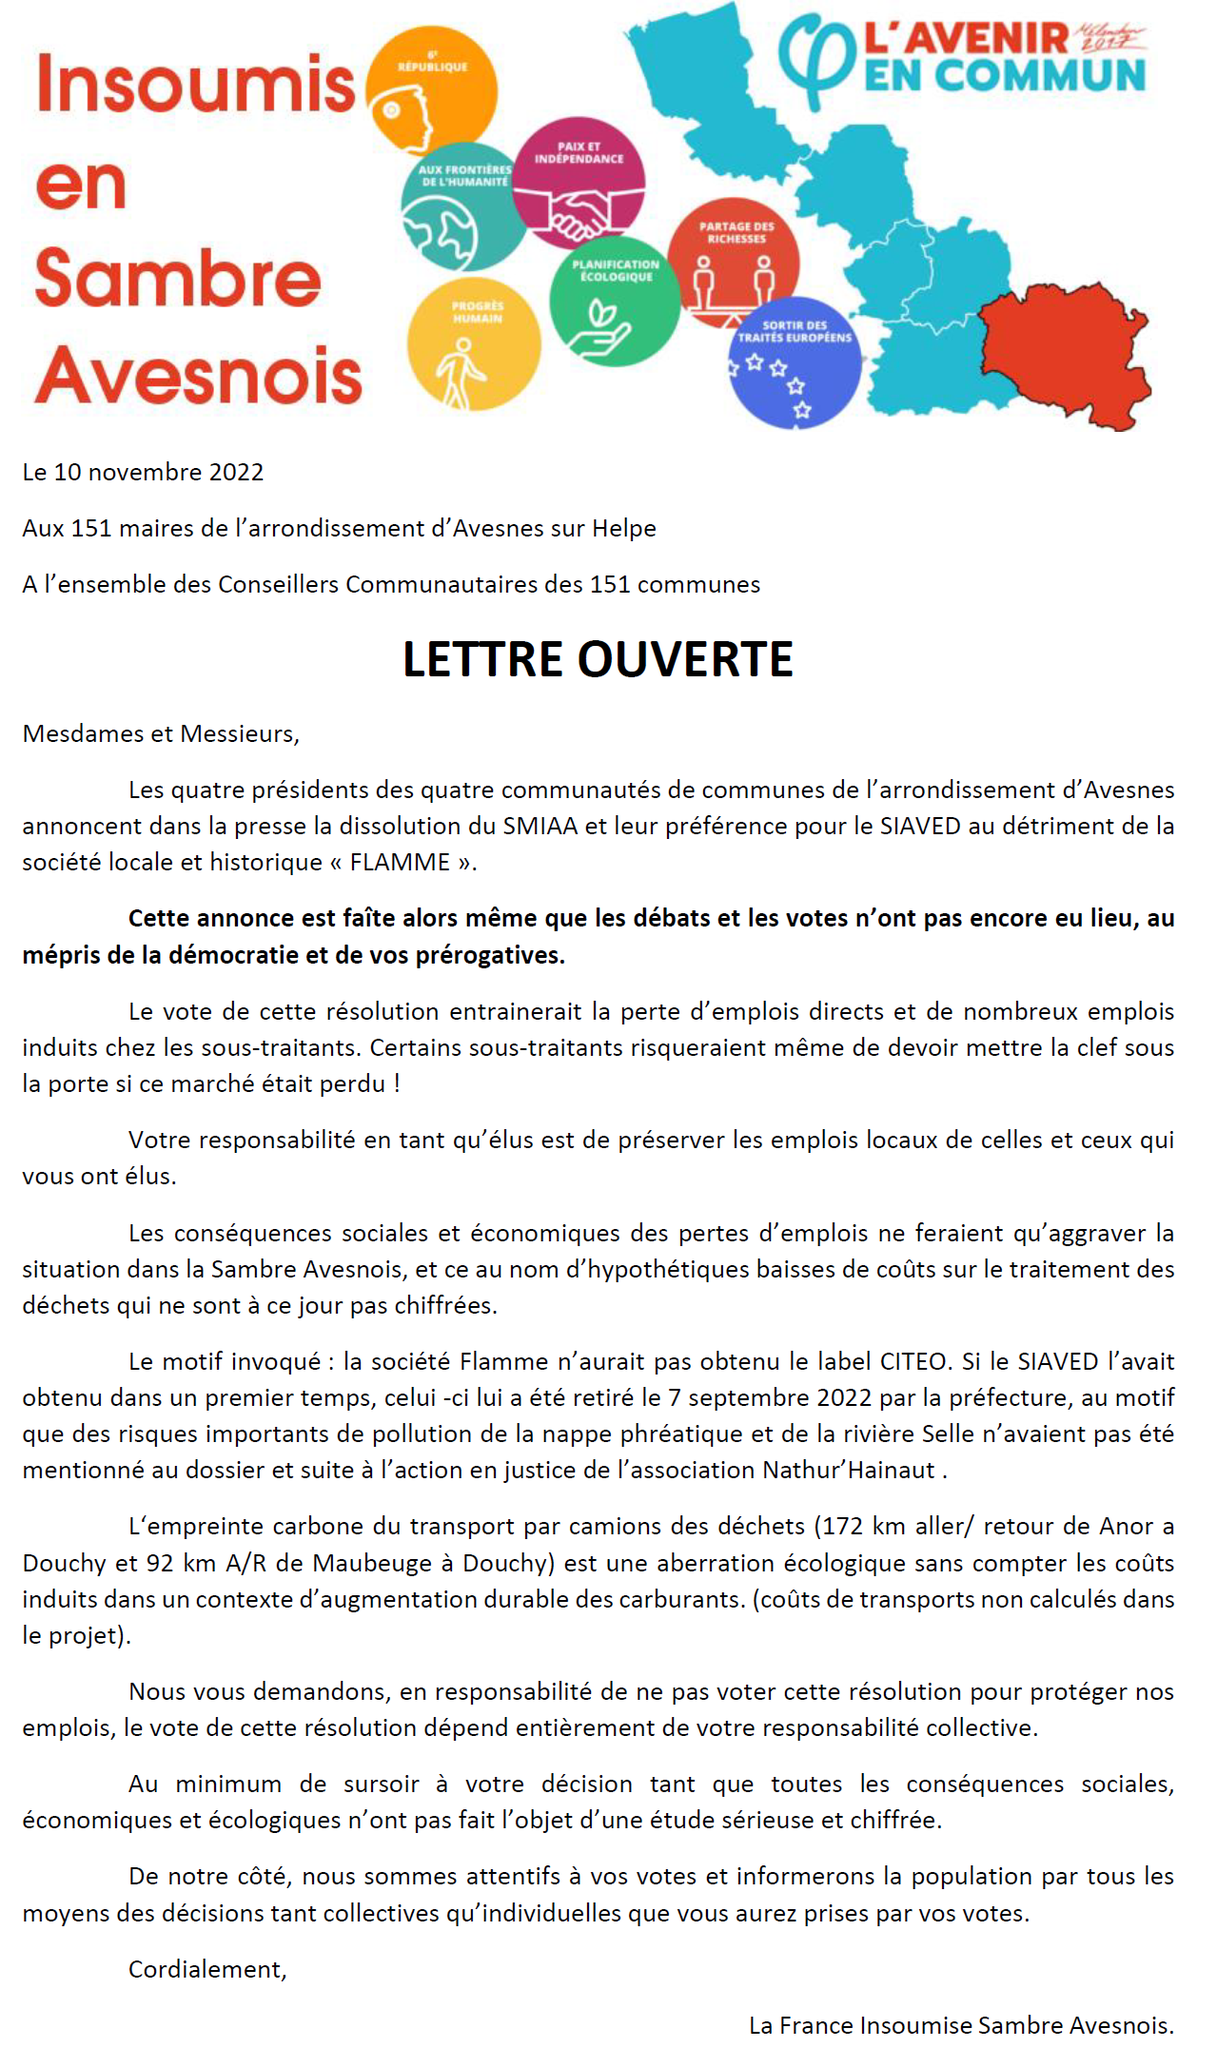 Lette ouverte France insoumise.png (1.14 MB)